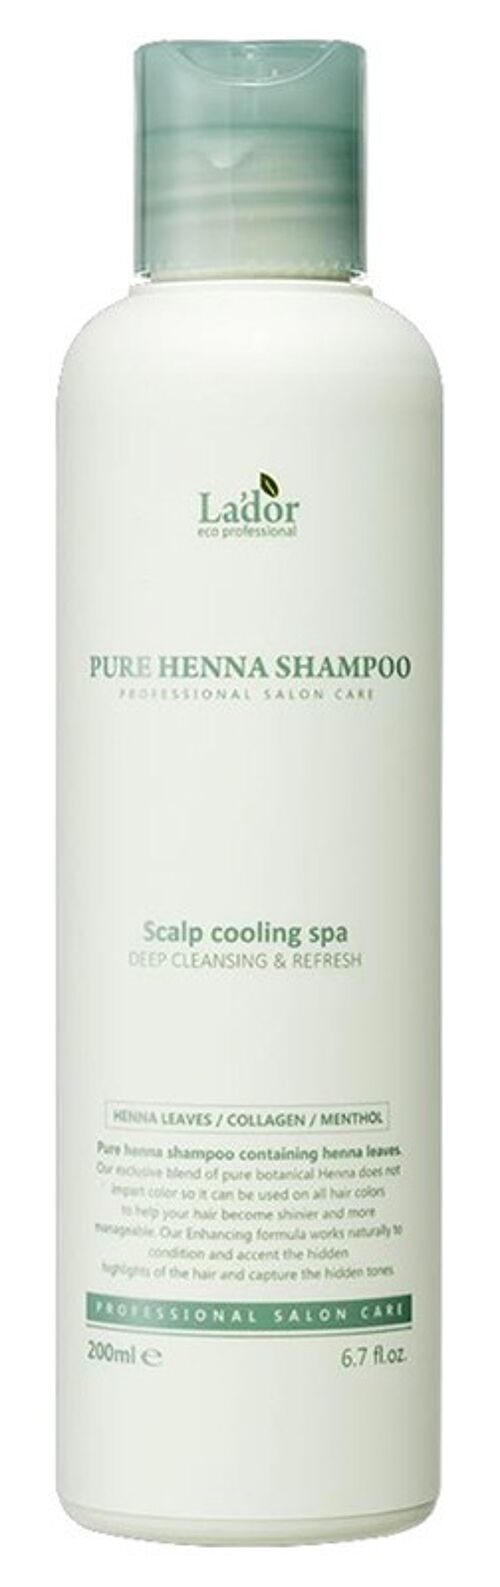 Pure Henna Shampoo 200ml